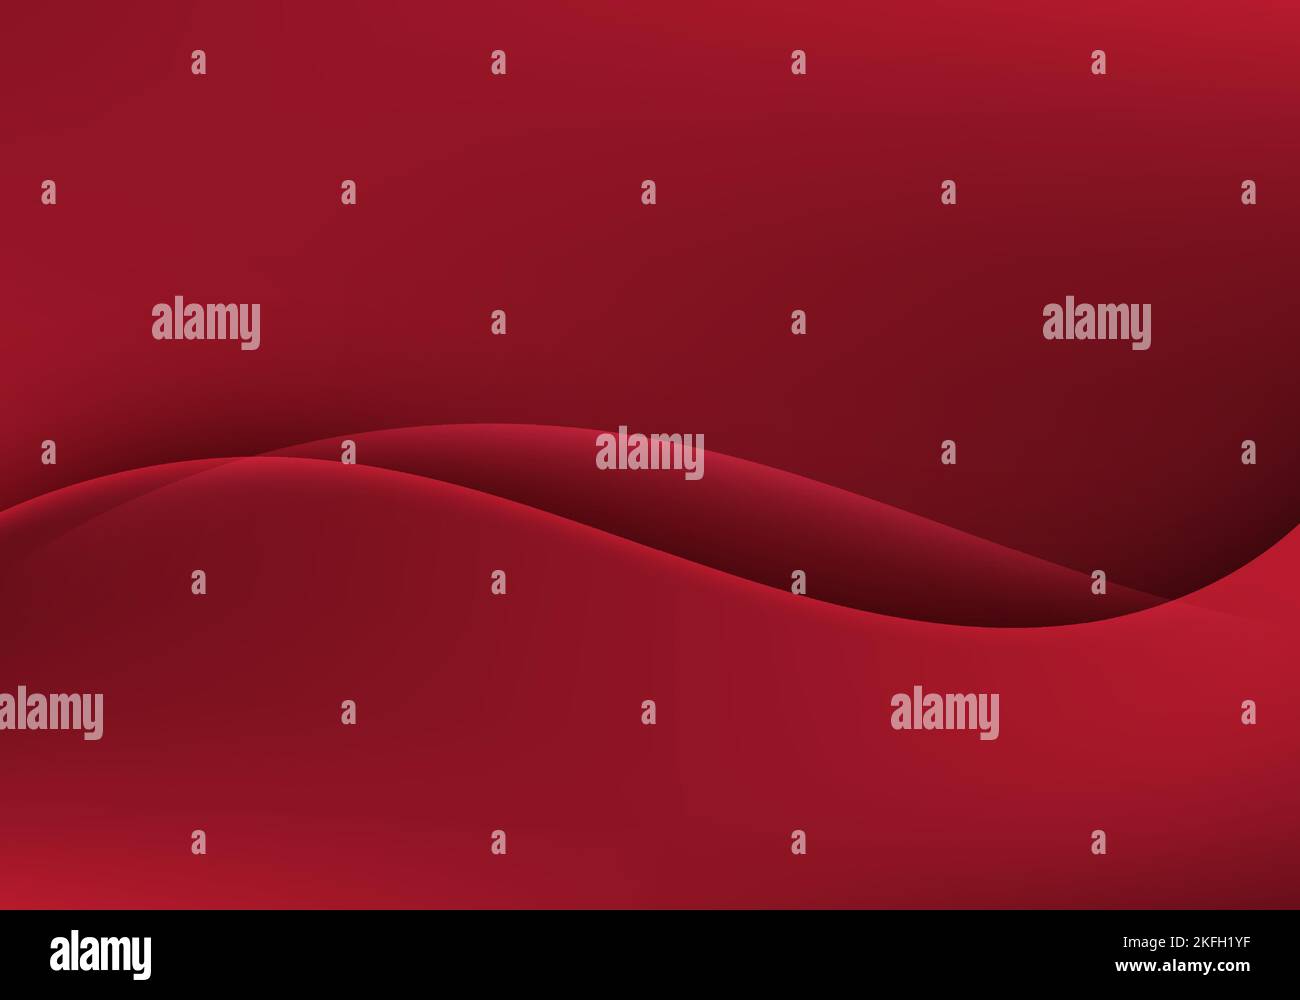 Résumé rouge liquide écoulement forme d'onde dégradé arrière-plan style minimal. Illustration vectorielle Illustration de Vecteur